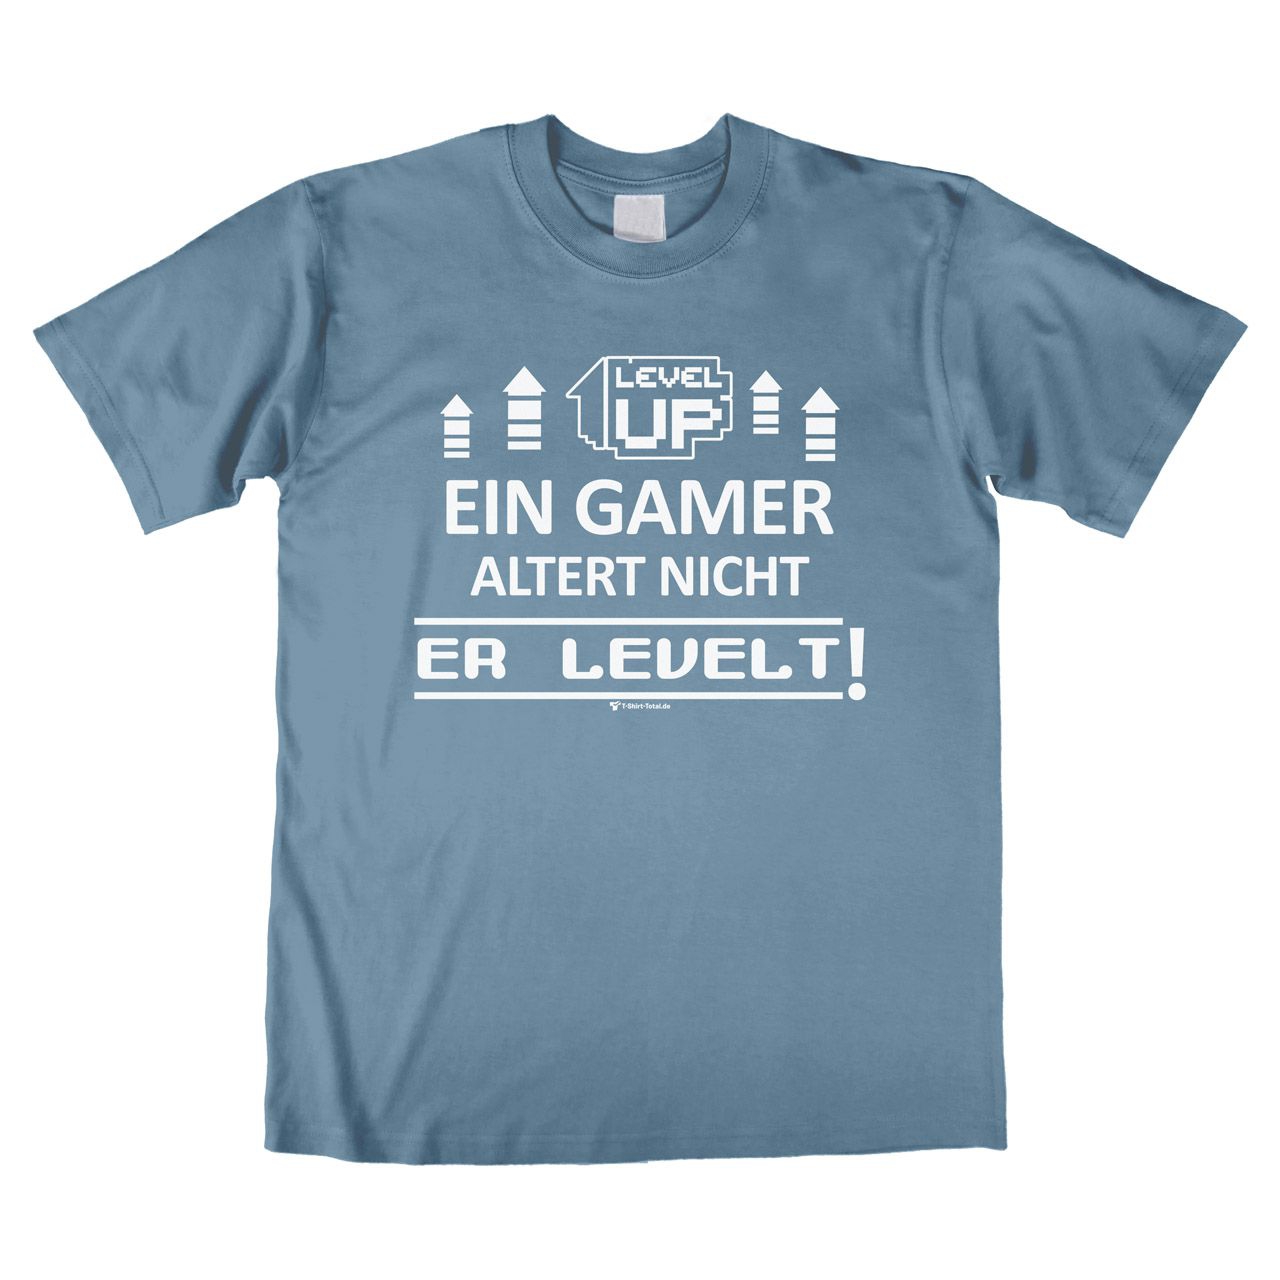 Ein Gamer levelt Unisex T-Shirt denim Medium